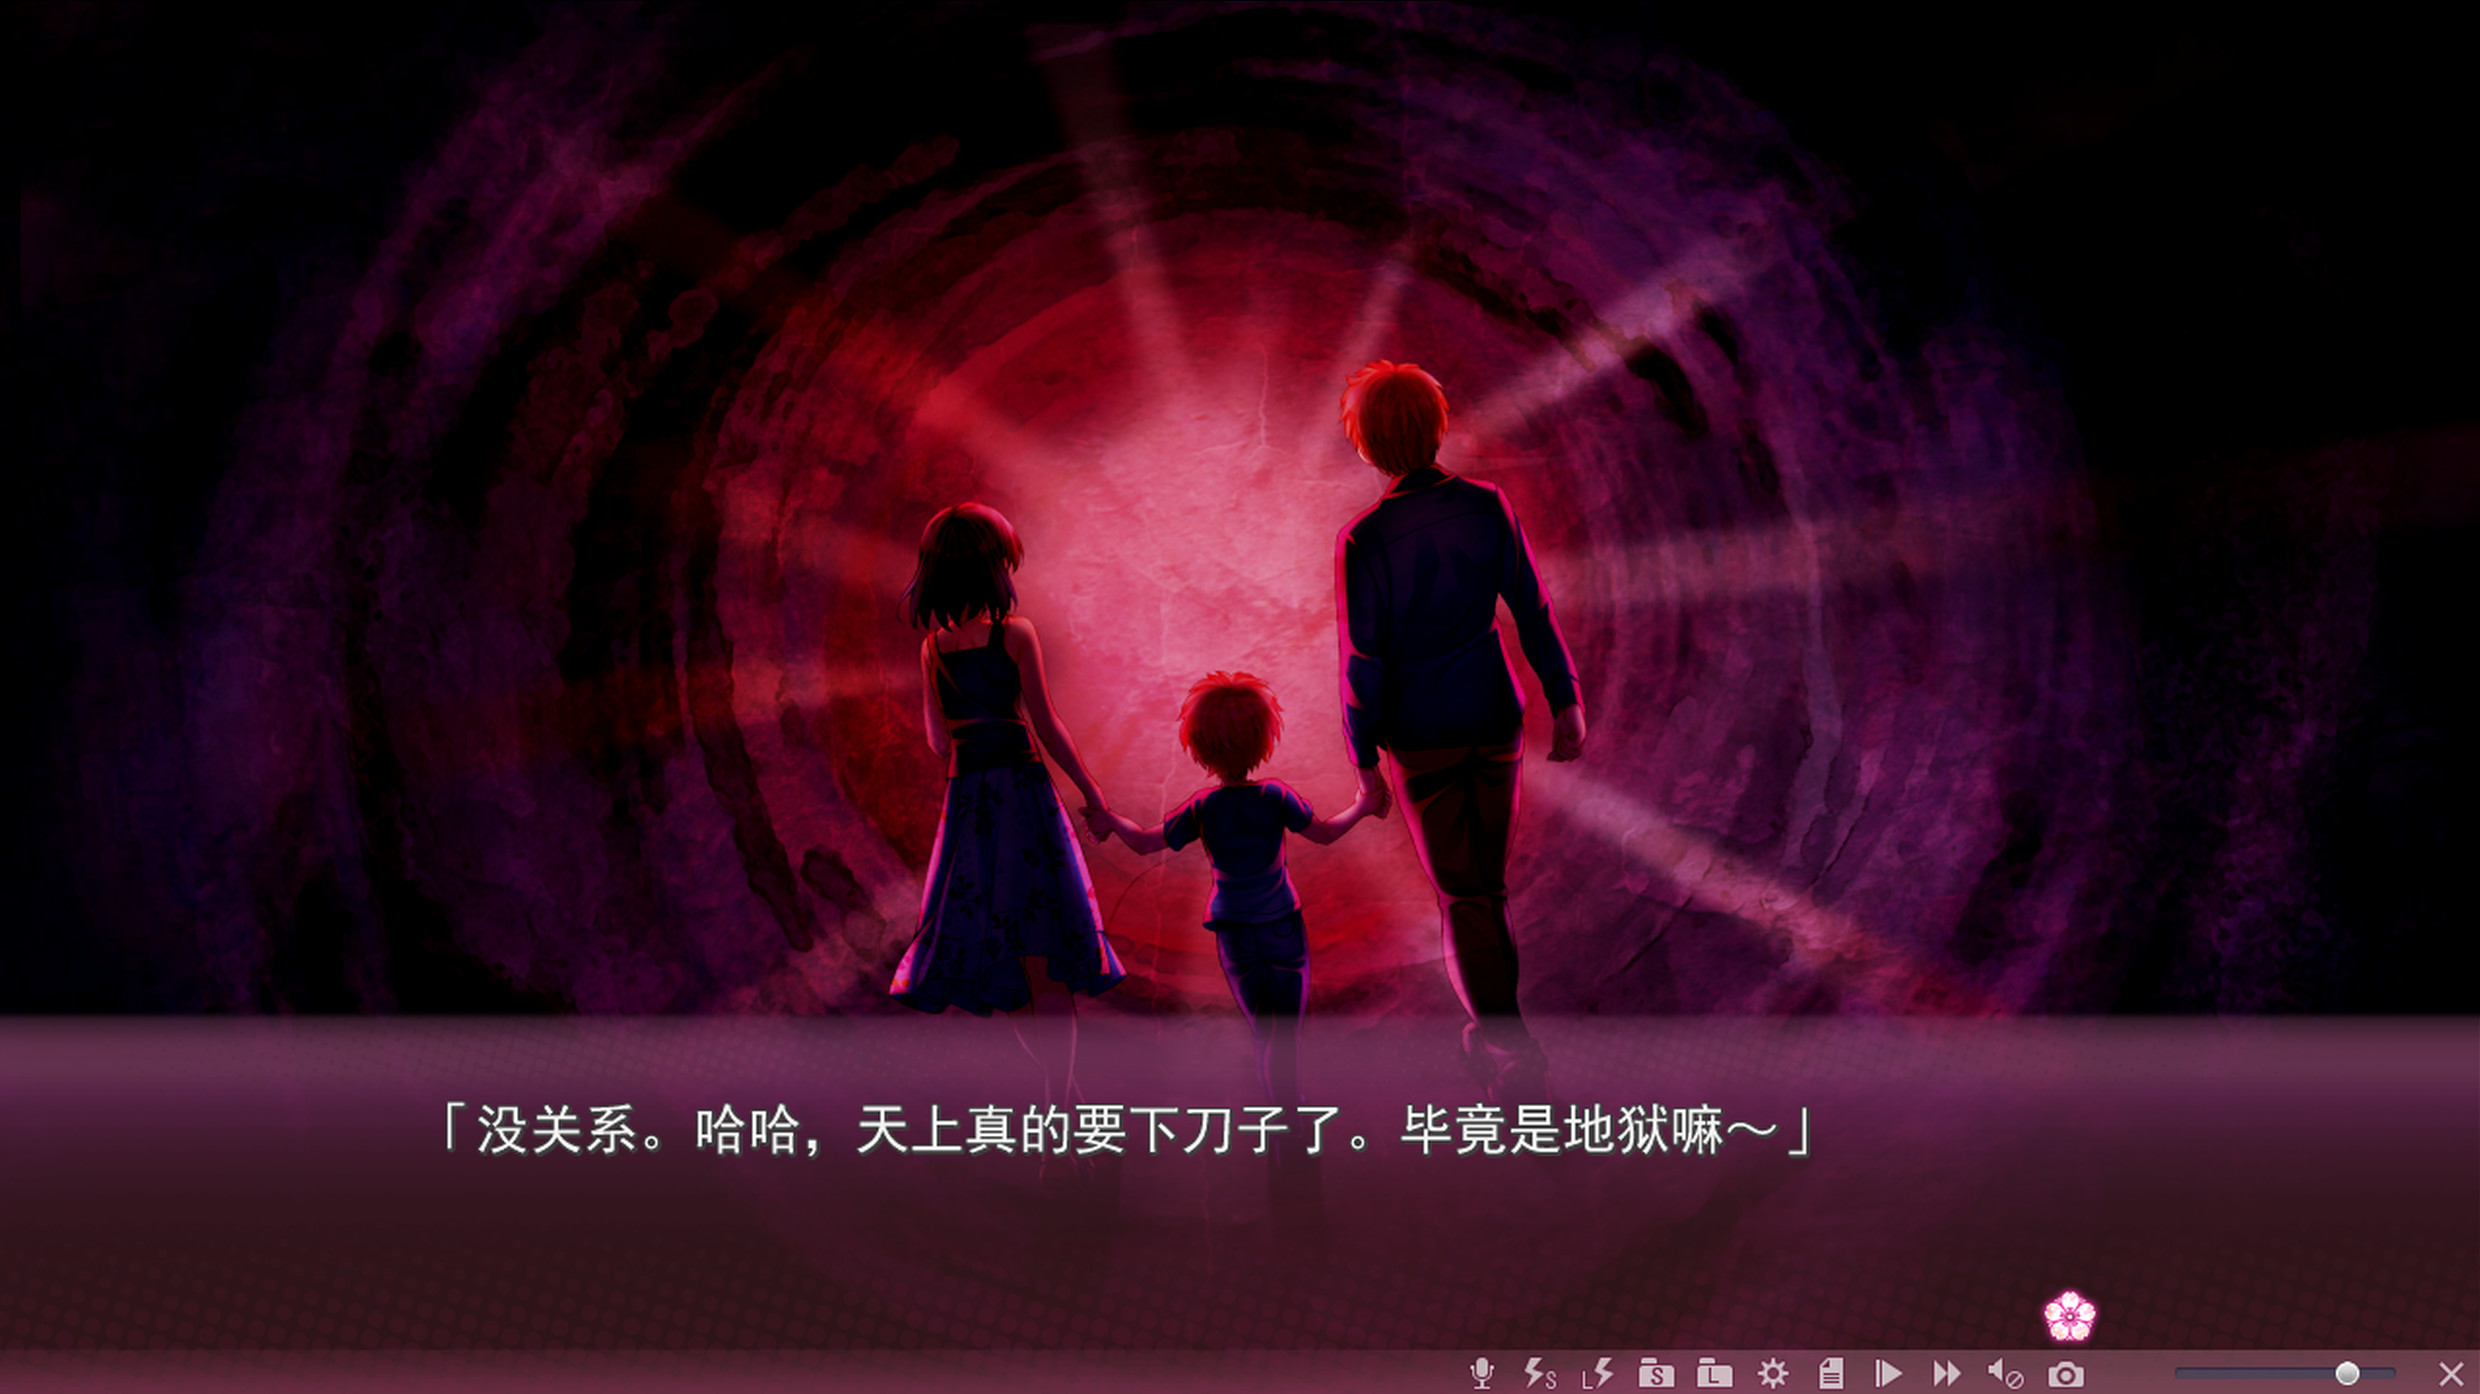  Sakura no Mori † Dreamers 2 screenshot